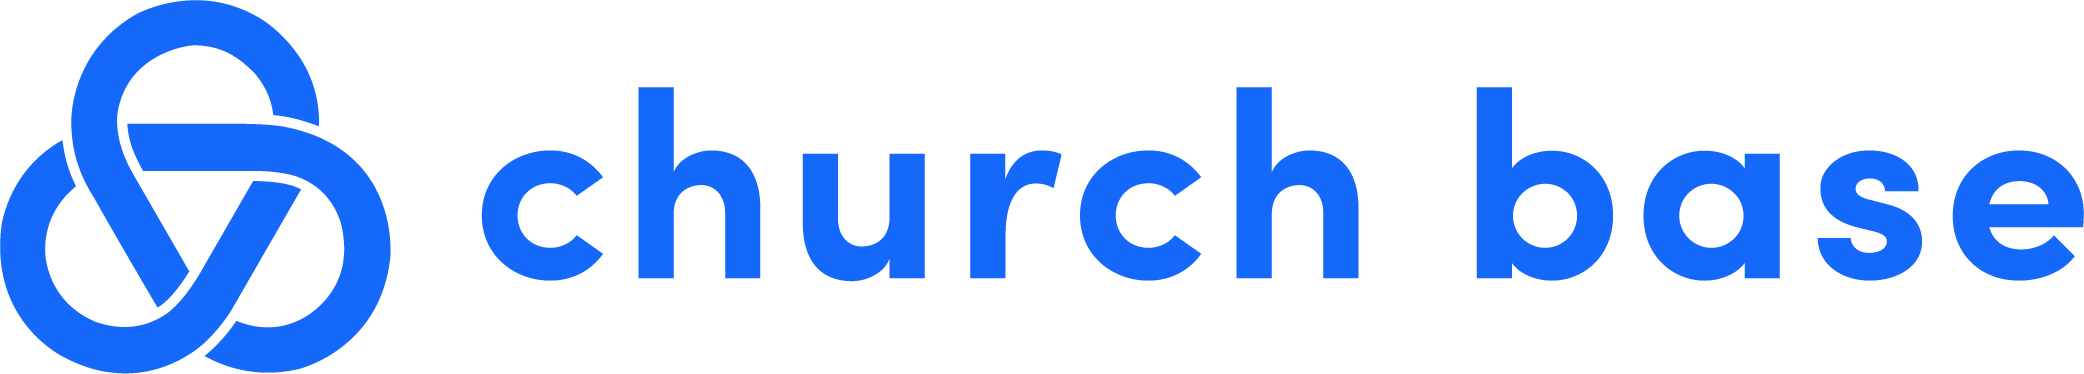 Churchbase logo-02